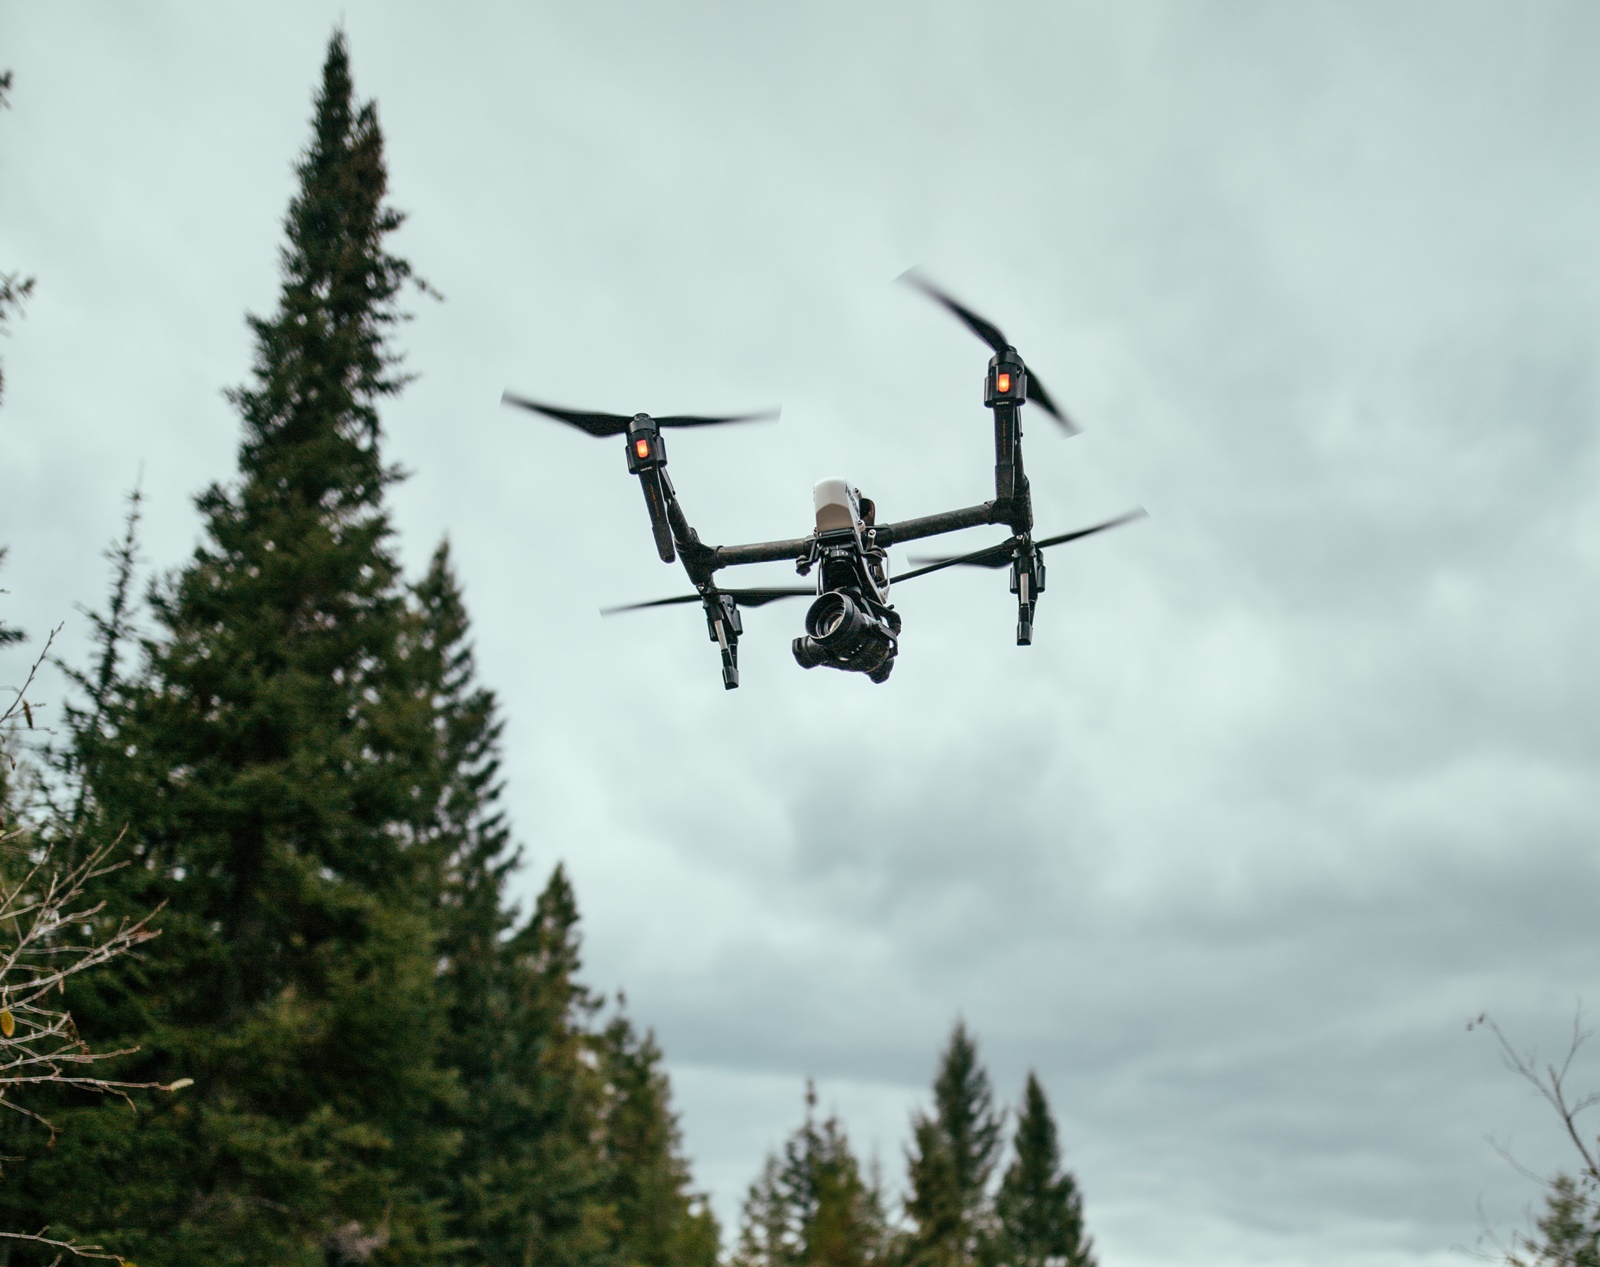 Βολή ρουκέτας από Drone: Ιστορική πρωτιά για την εγχώρια αμυντική βιομηχανία